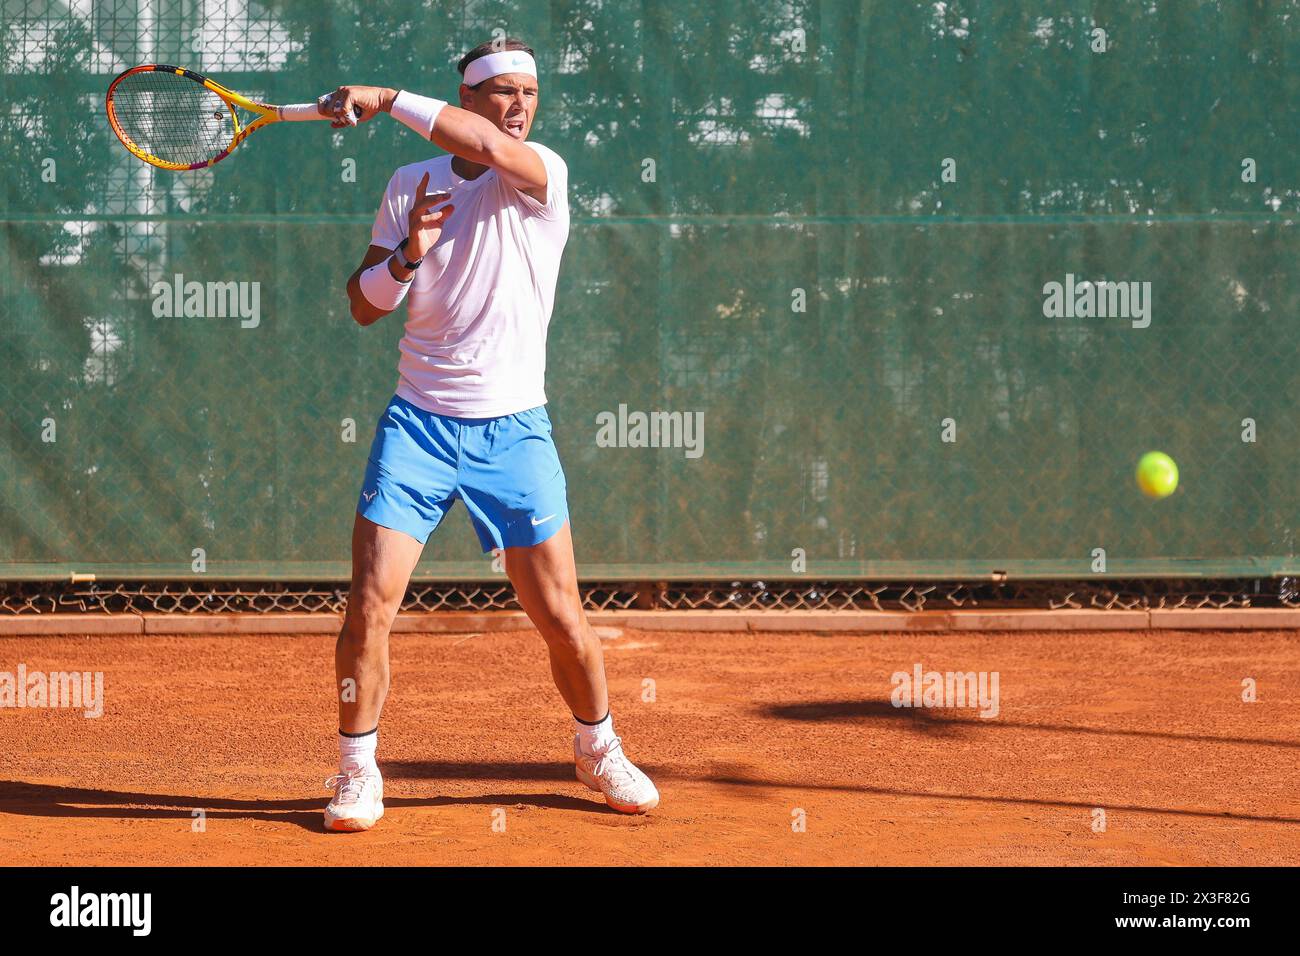 Barcelone, Espagne. 14 avril 2024. Le joueur de tennis Rafael Nadal vu lors d'une séance d'entraînement au tournoi Barcelona Open Banc Sabadell à Barcelone. (Crédit photo : Gonzales photo - Ainhoa Rodriguez Jara). Banque D'Images